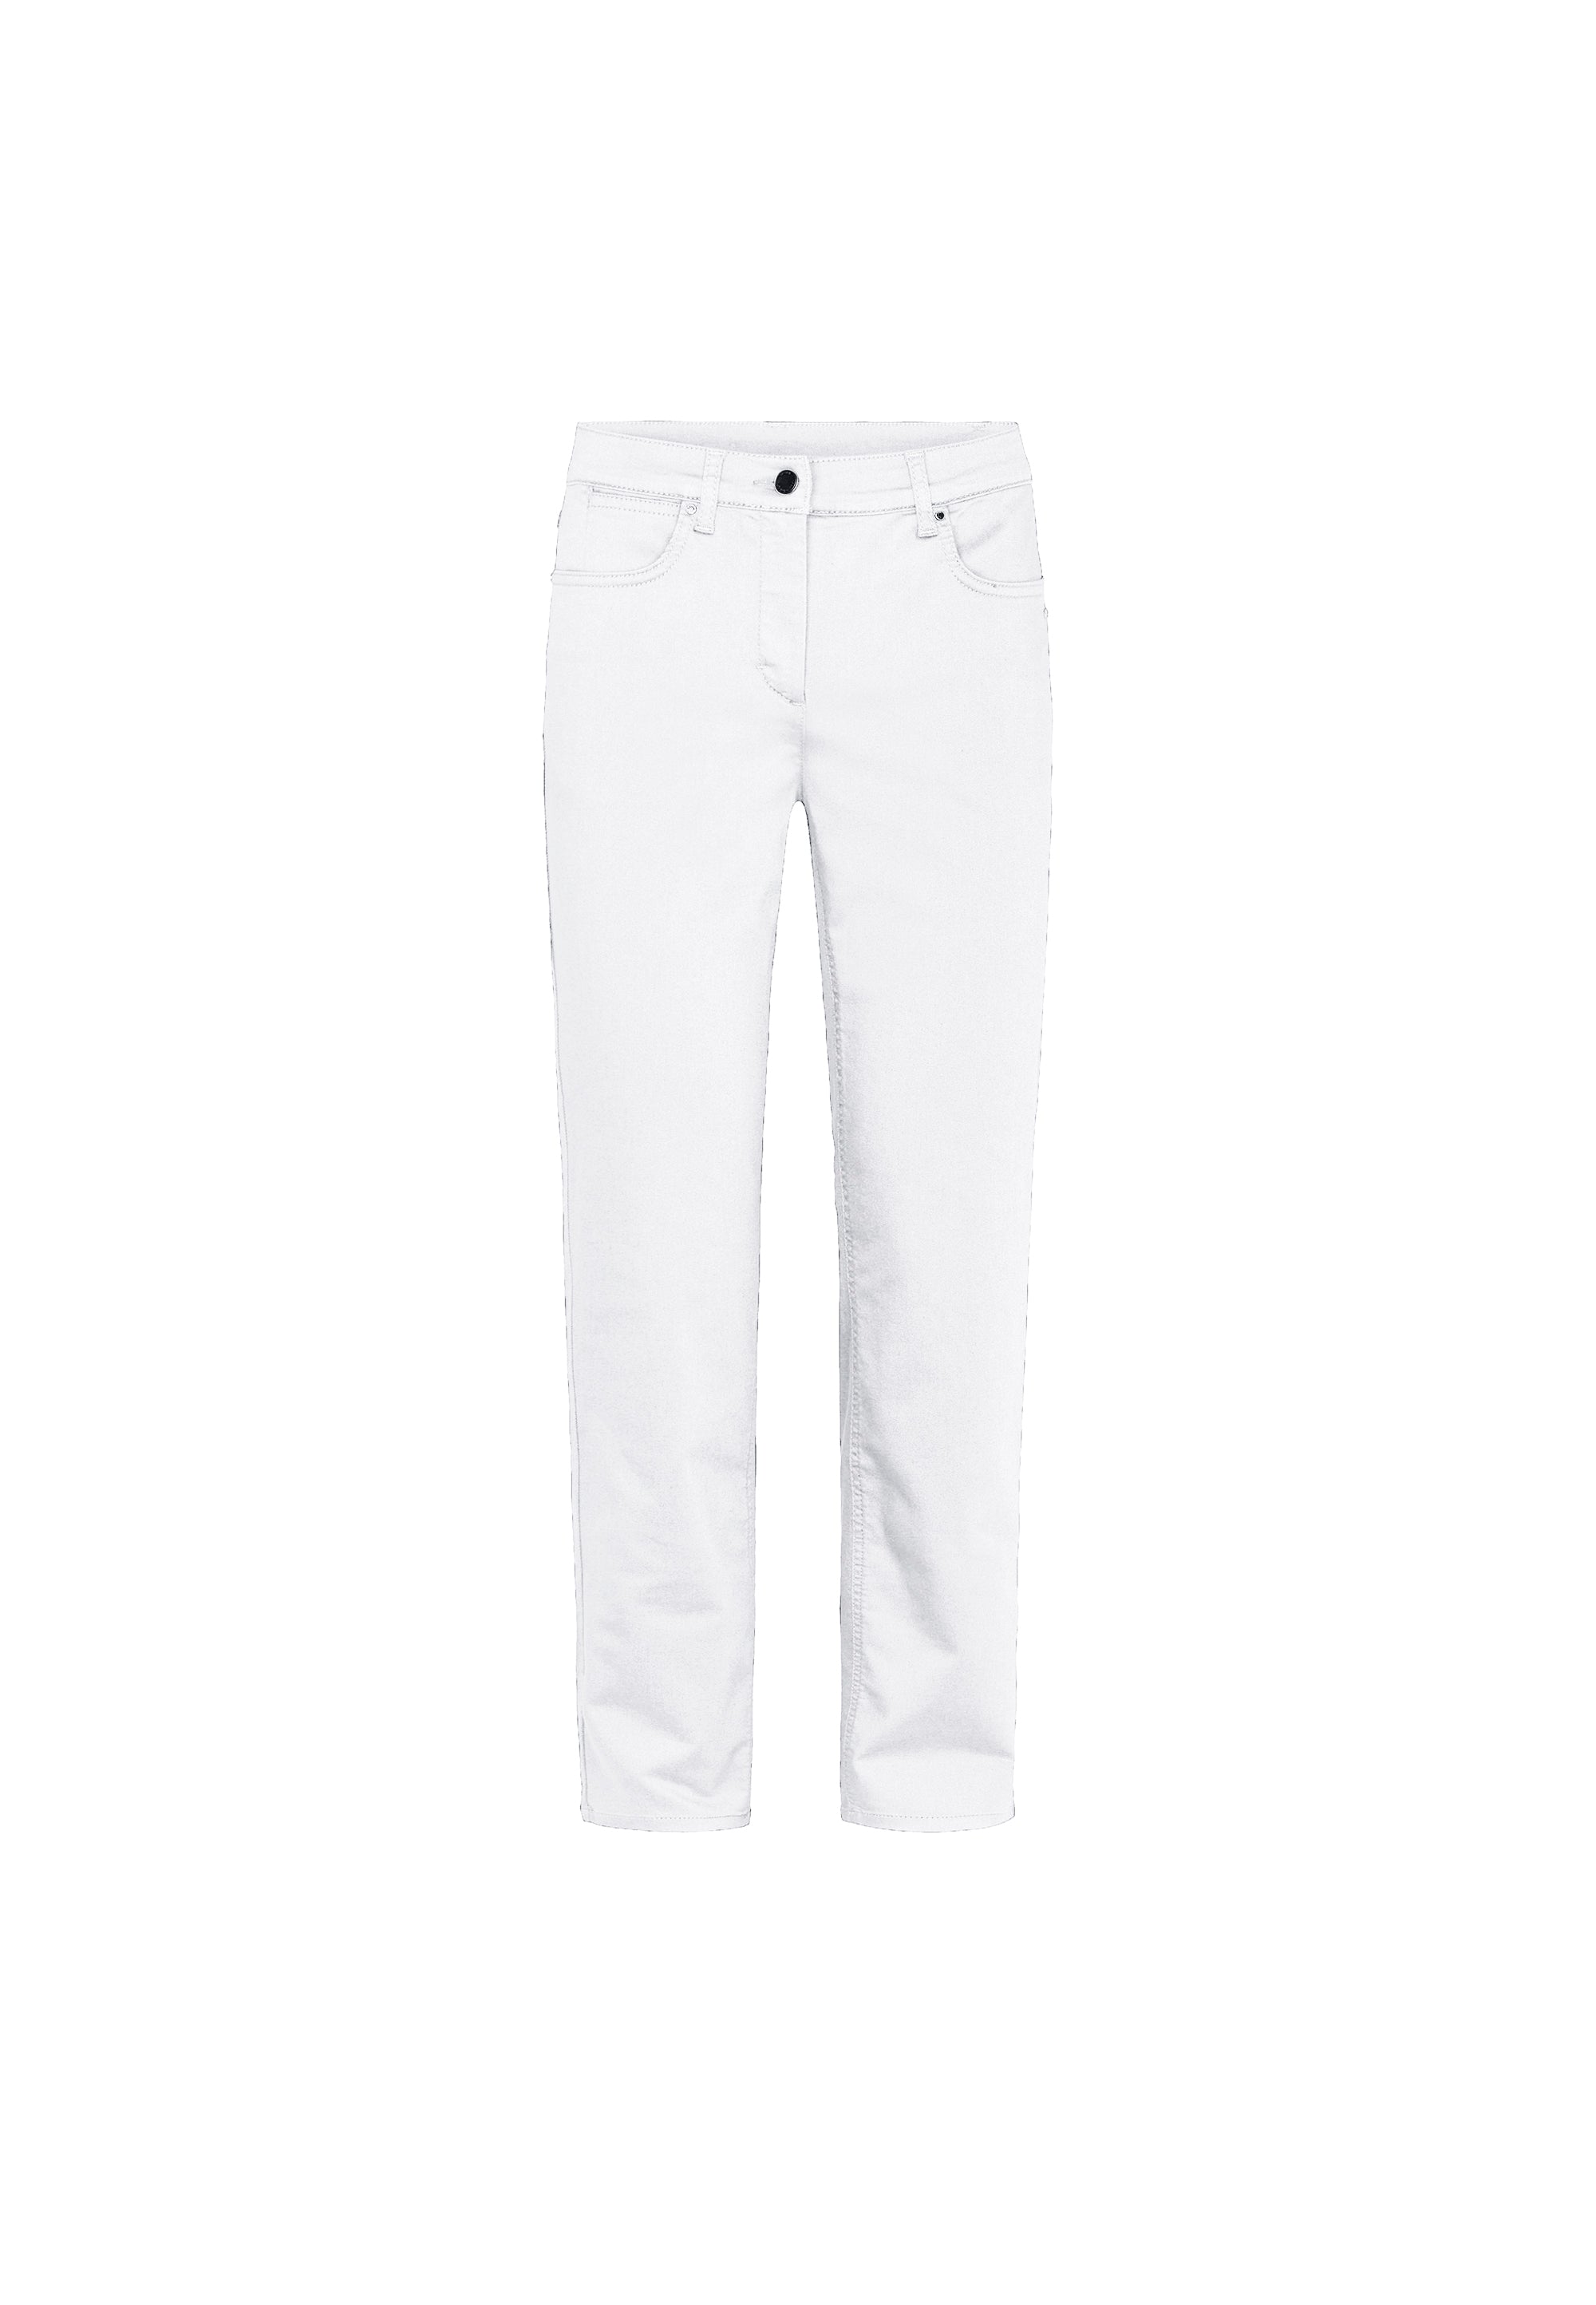 LAURIE Charlotte Regular - Medium Length Trousers REGULAR 10000 White